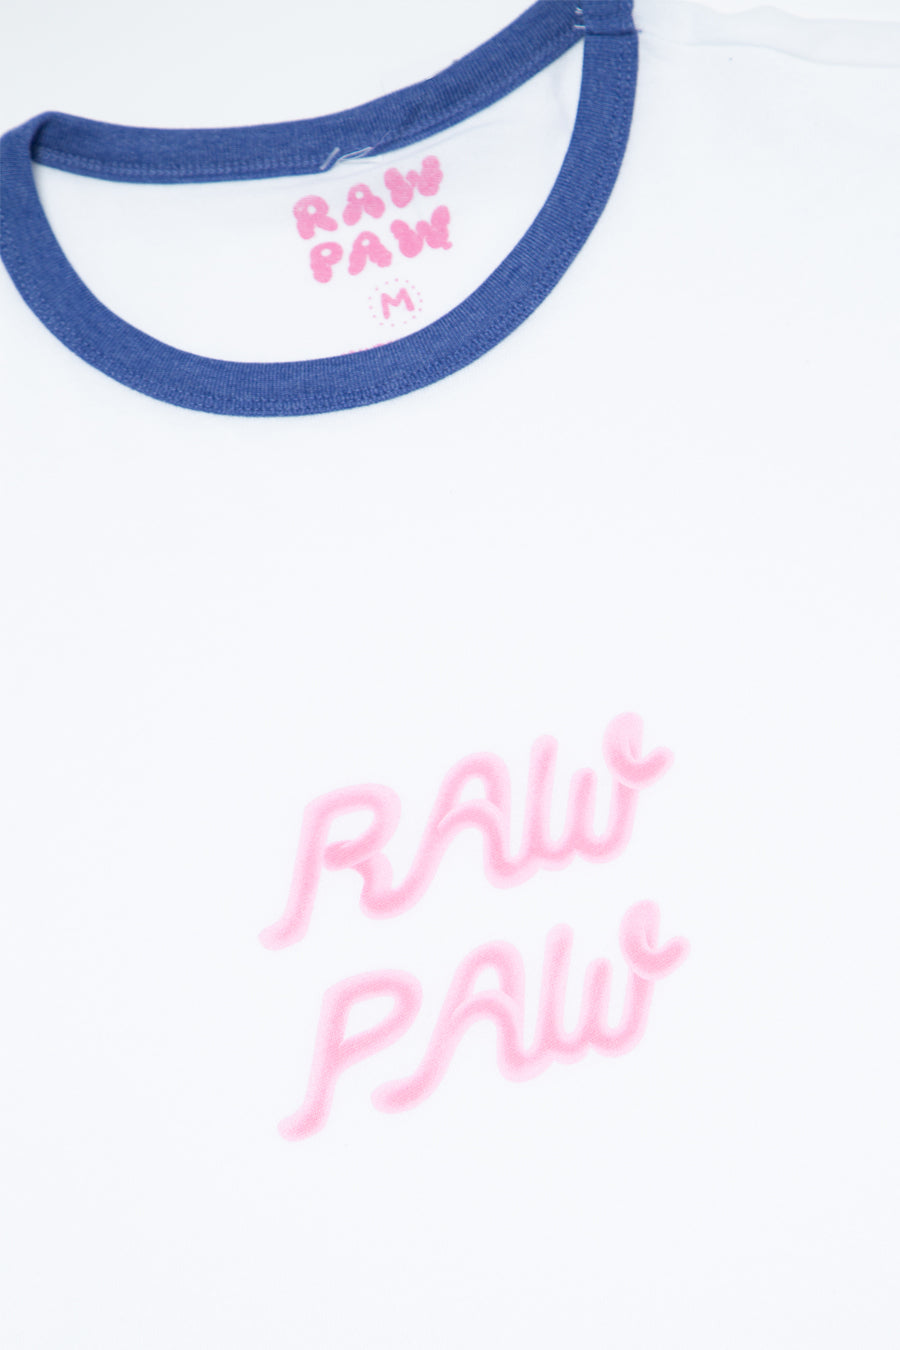 Raw Paw Airbrush